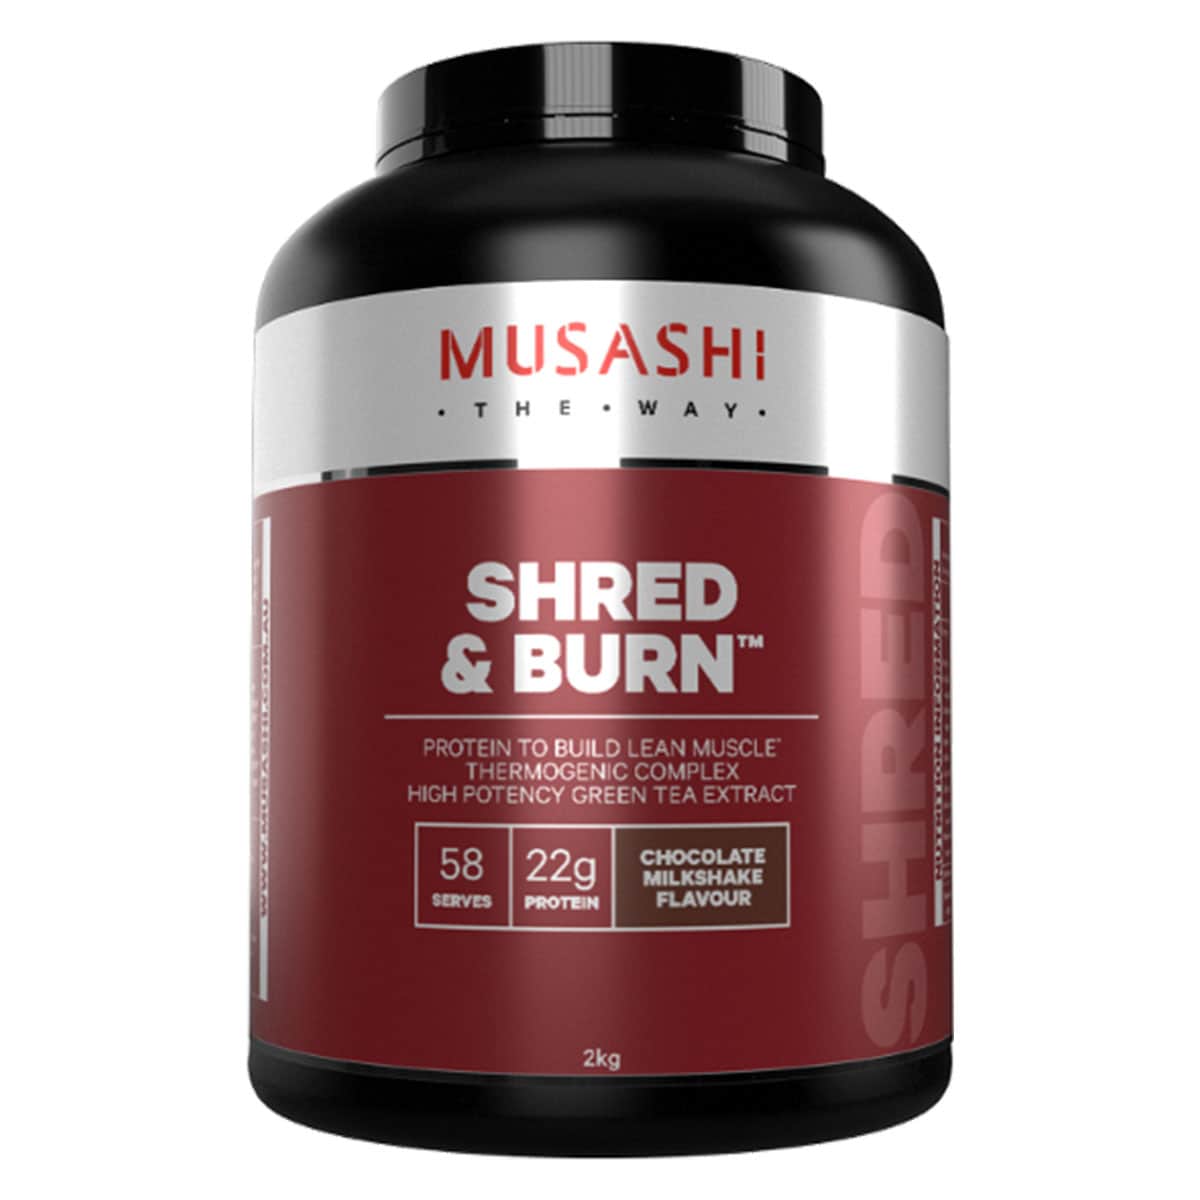 Musashi Shred & Burn Chocolate Milkshake 2Kg